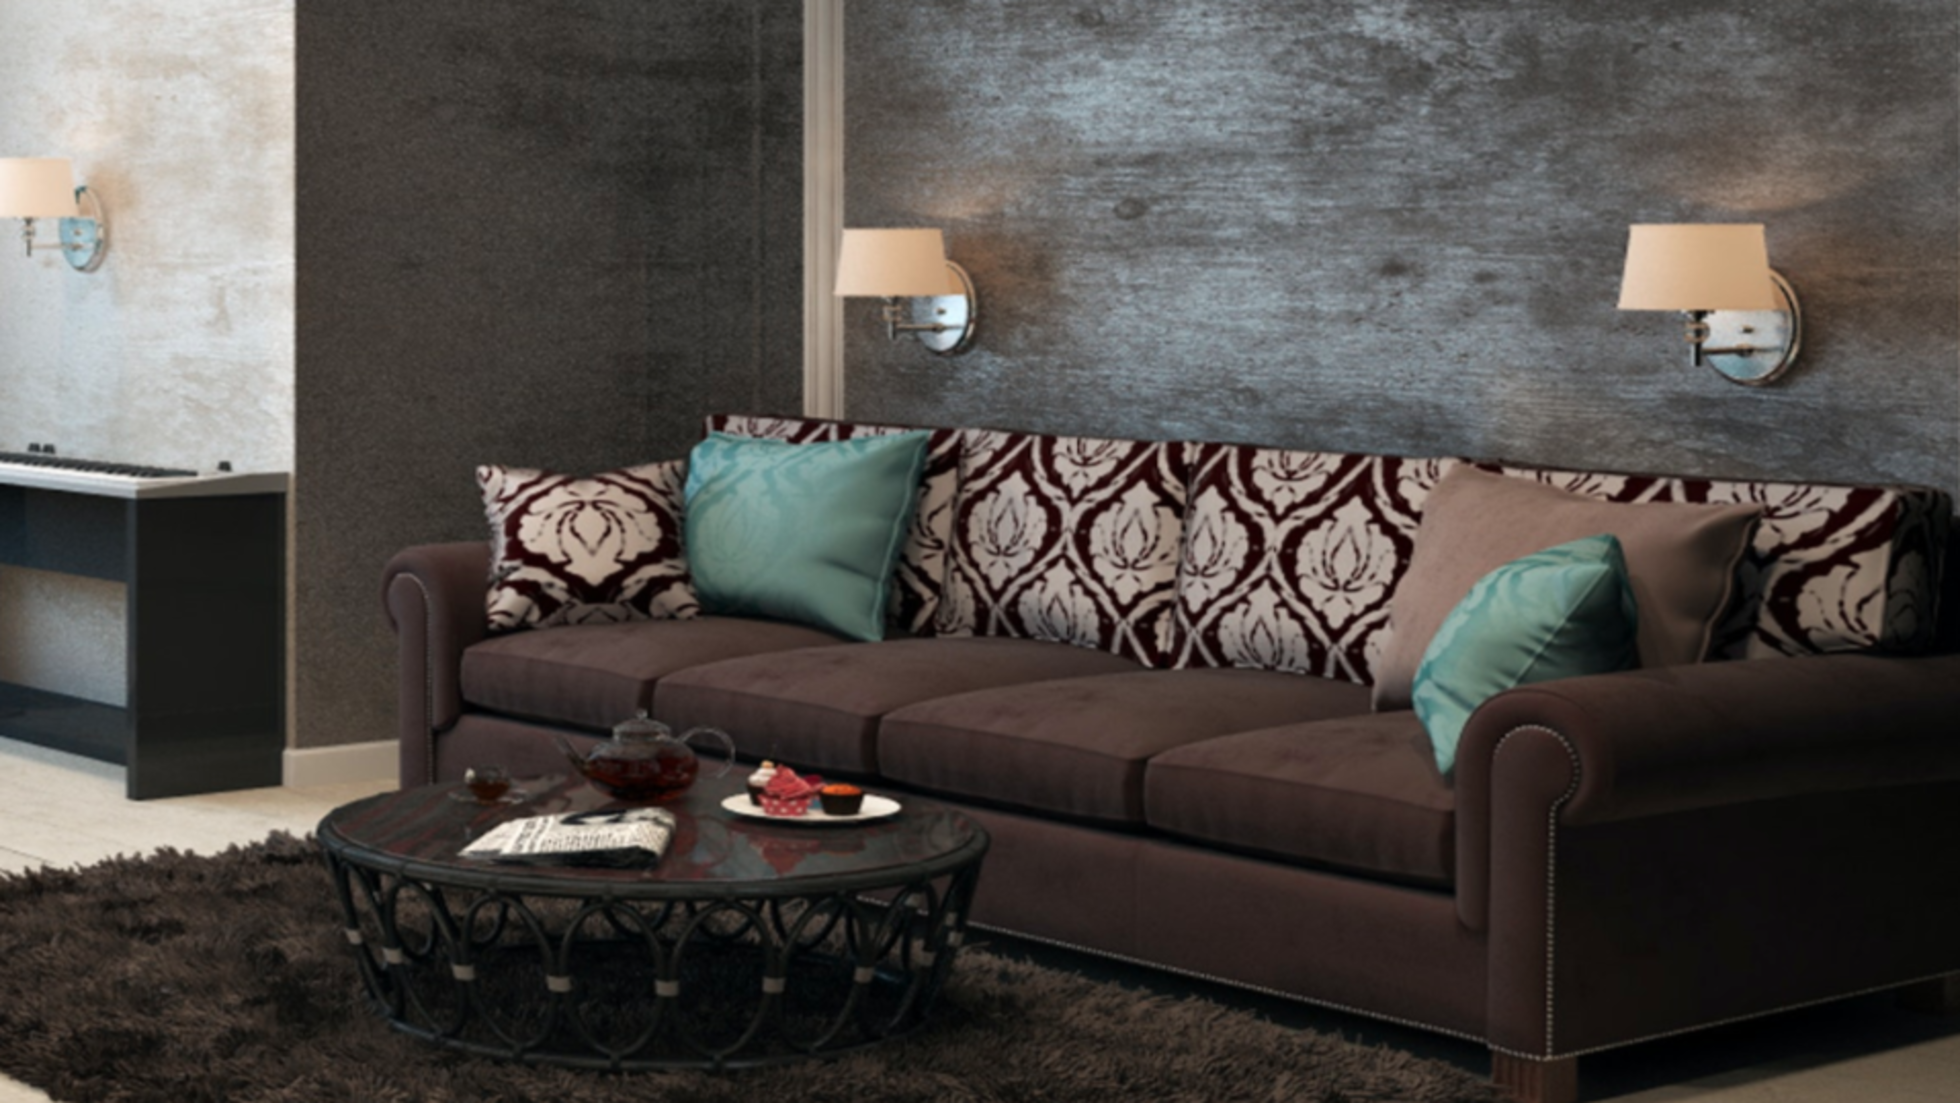 La idea de comprar un sofá largo no solo transforma tu estancia en una zona de elegancia y confort